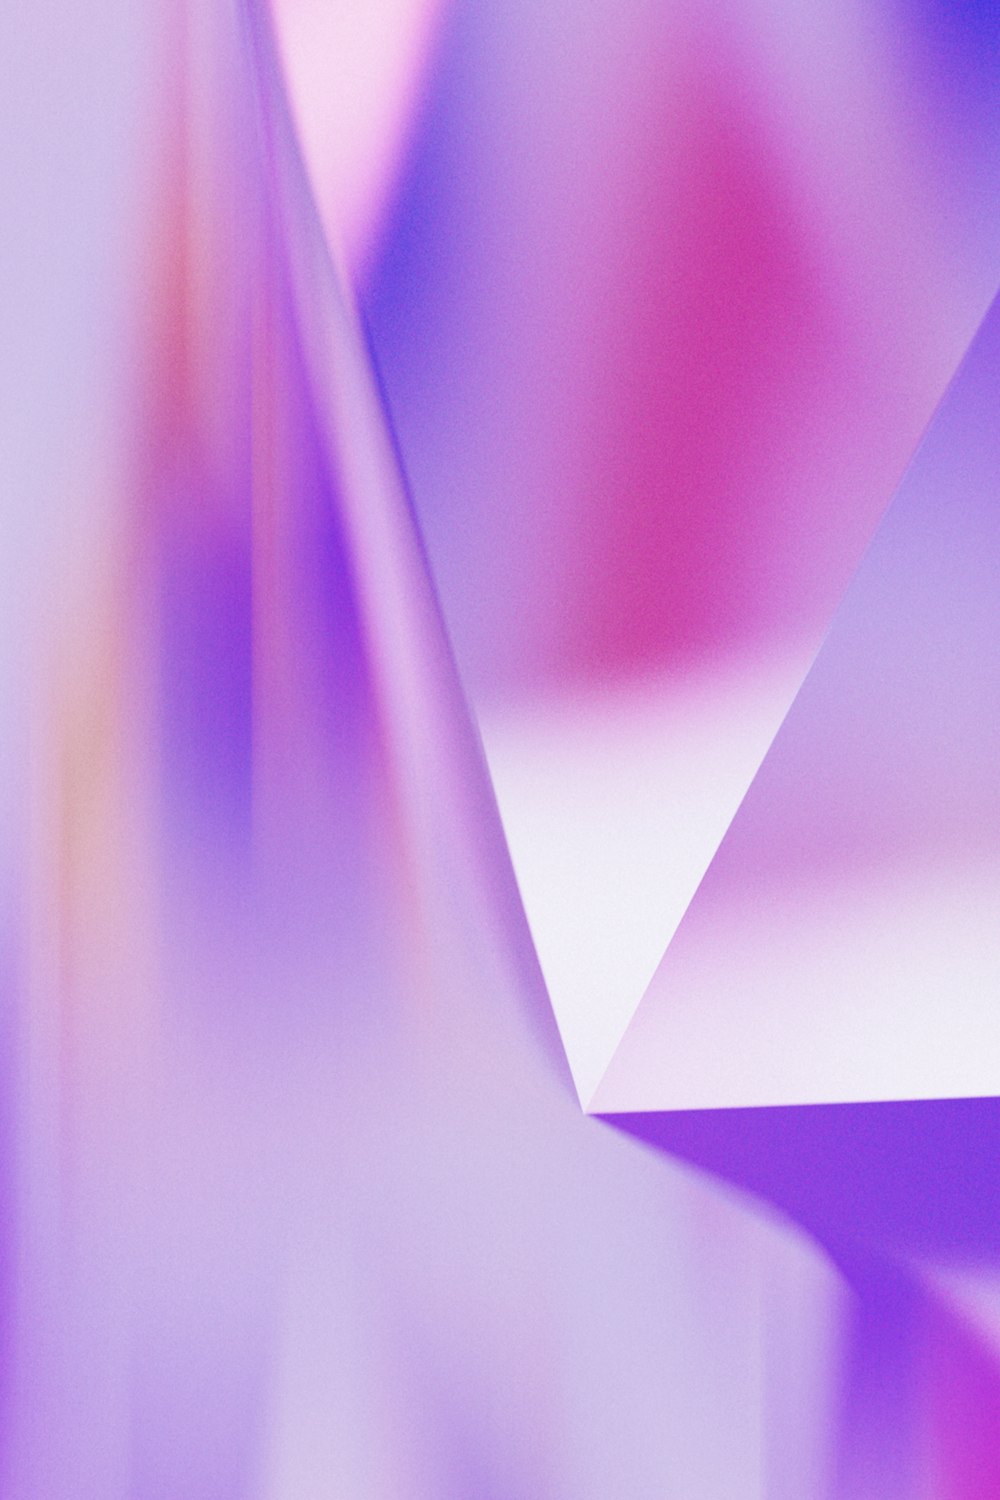 Un'immagine sfocata di un oggetto bianco e viola